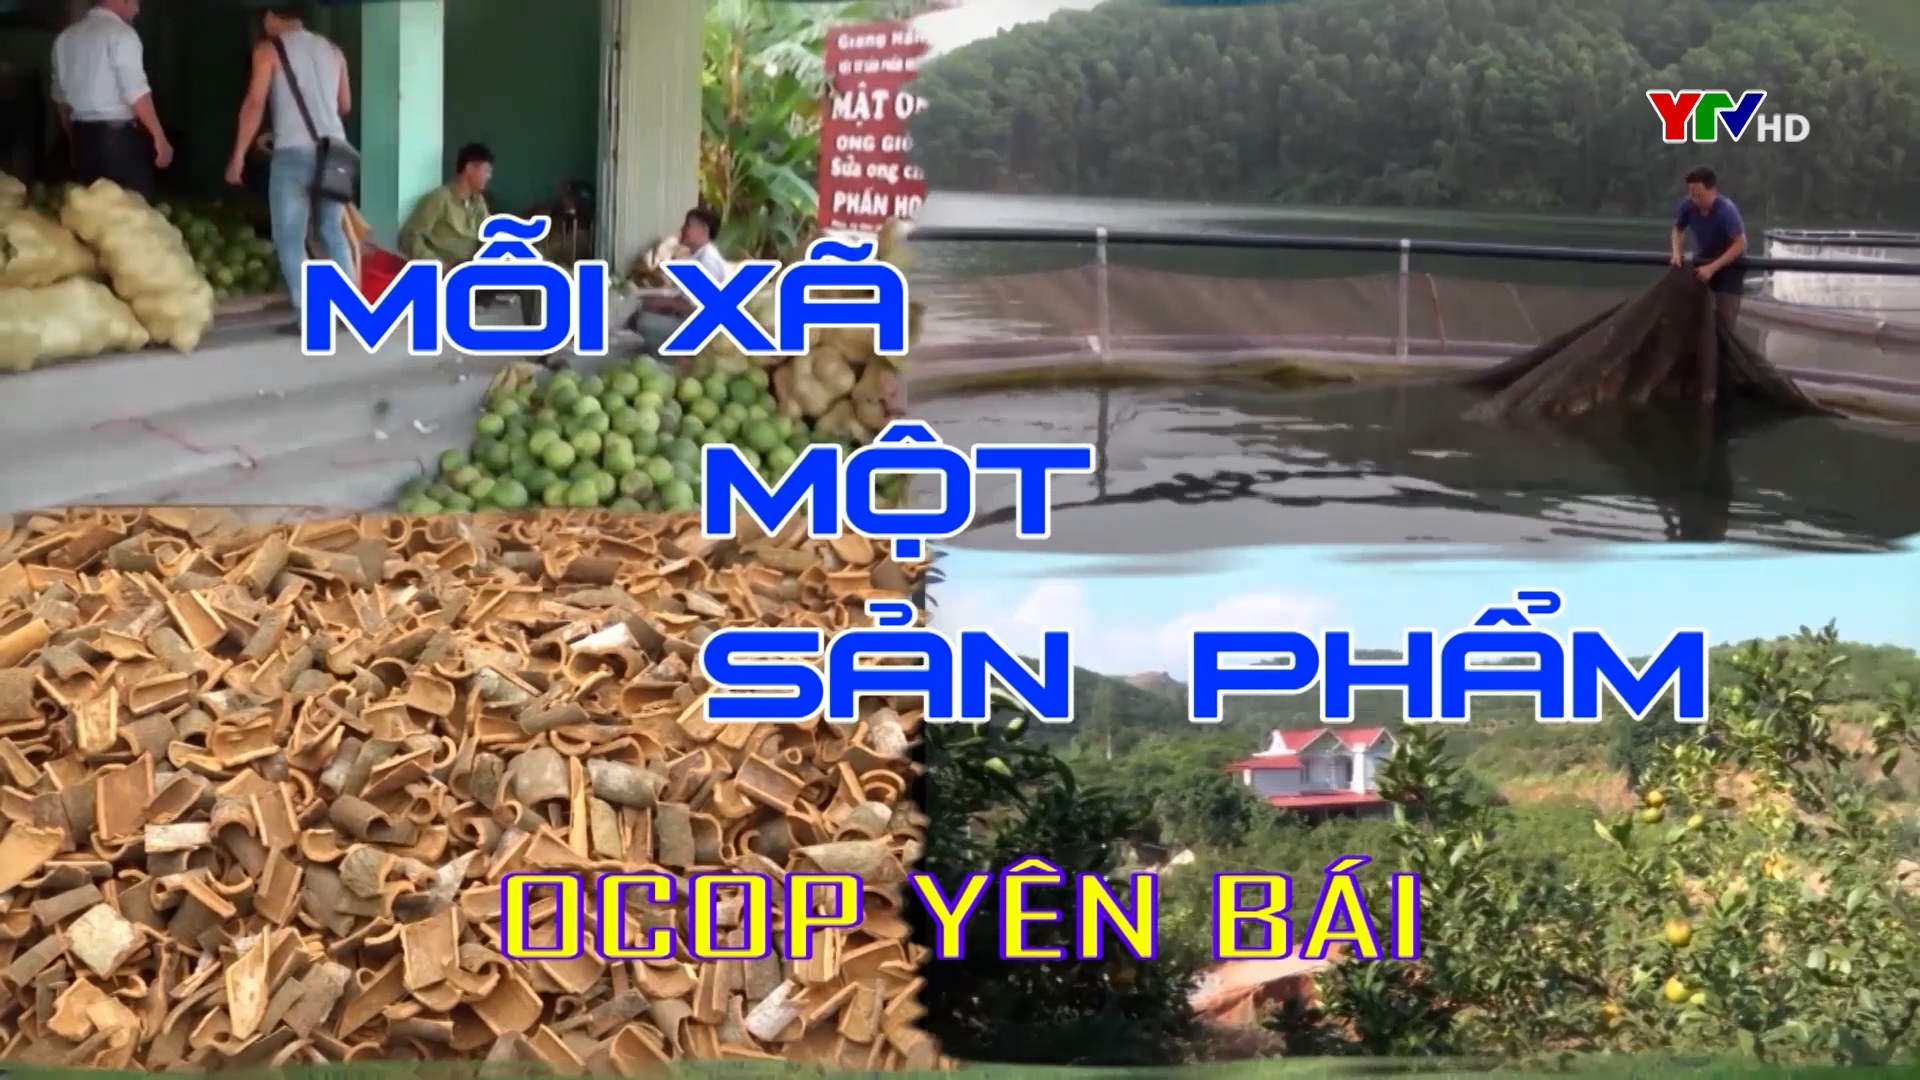 Tinh dầu quế - Sản phẩm OCOP 3 sao của huyện Văn Yên